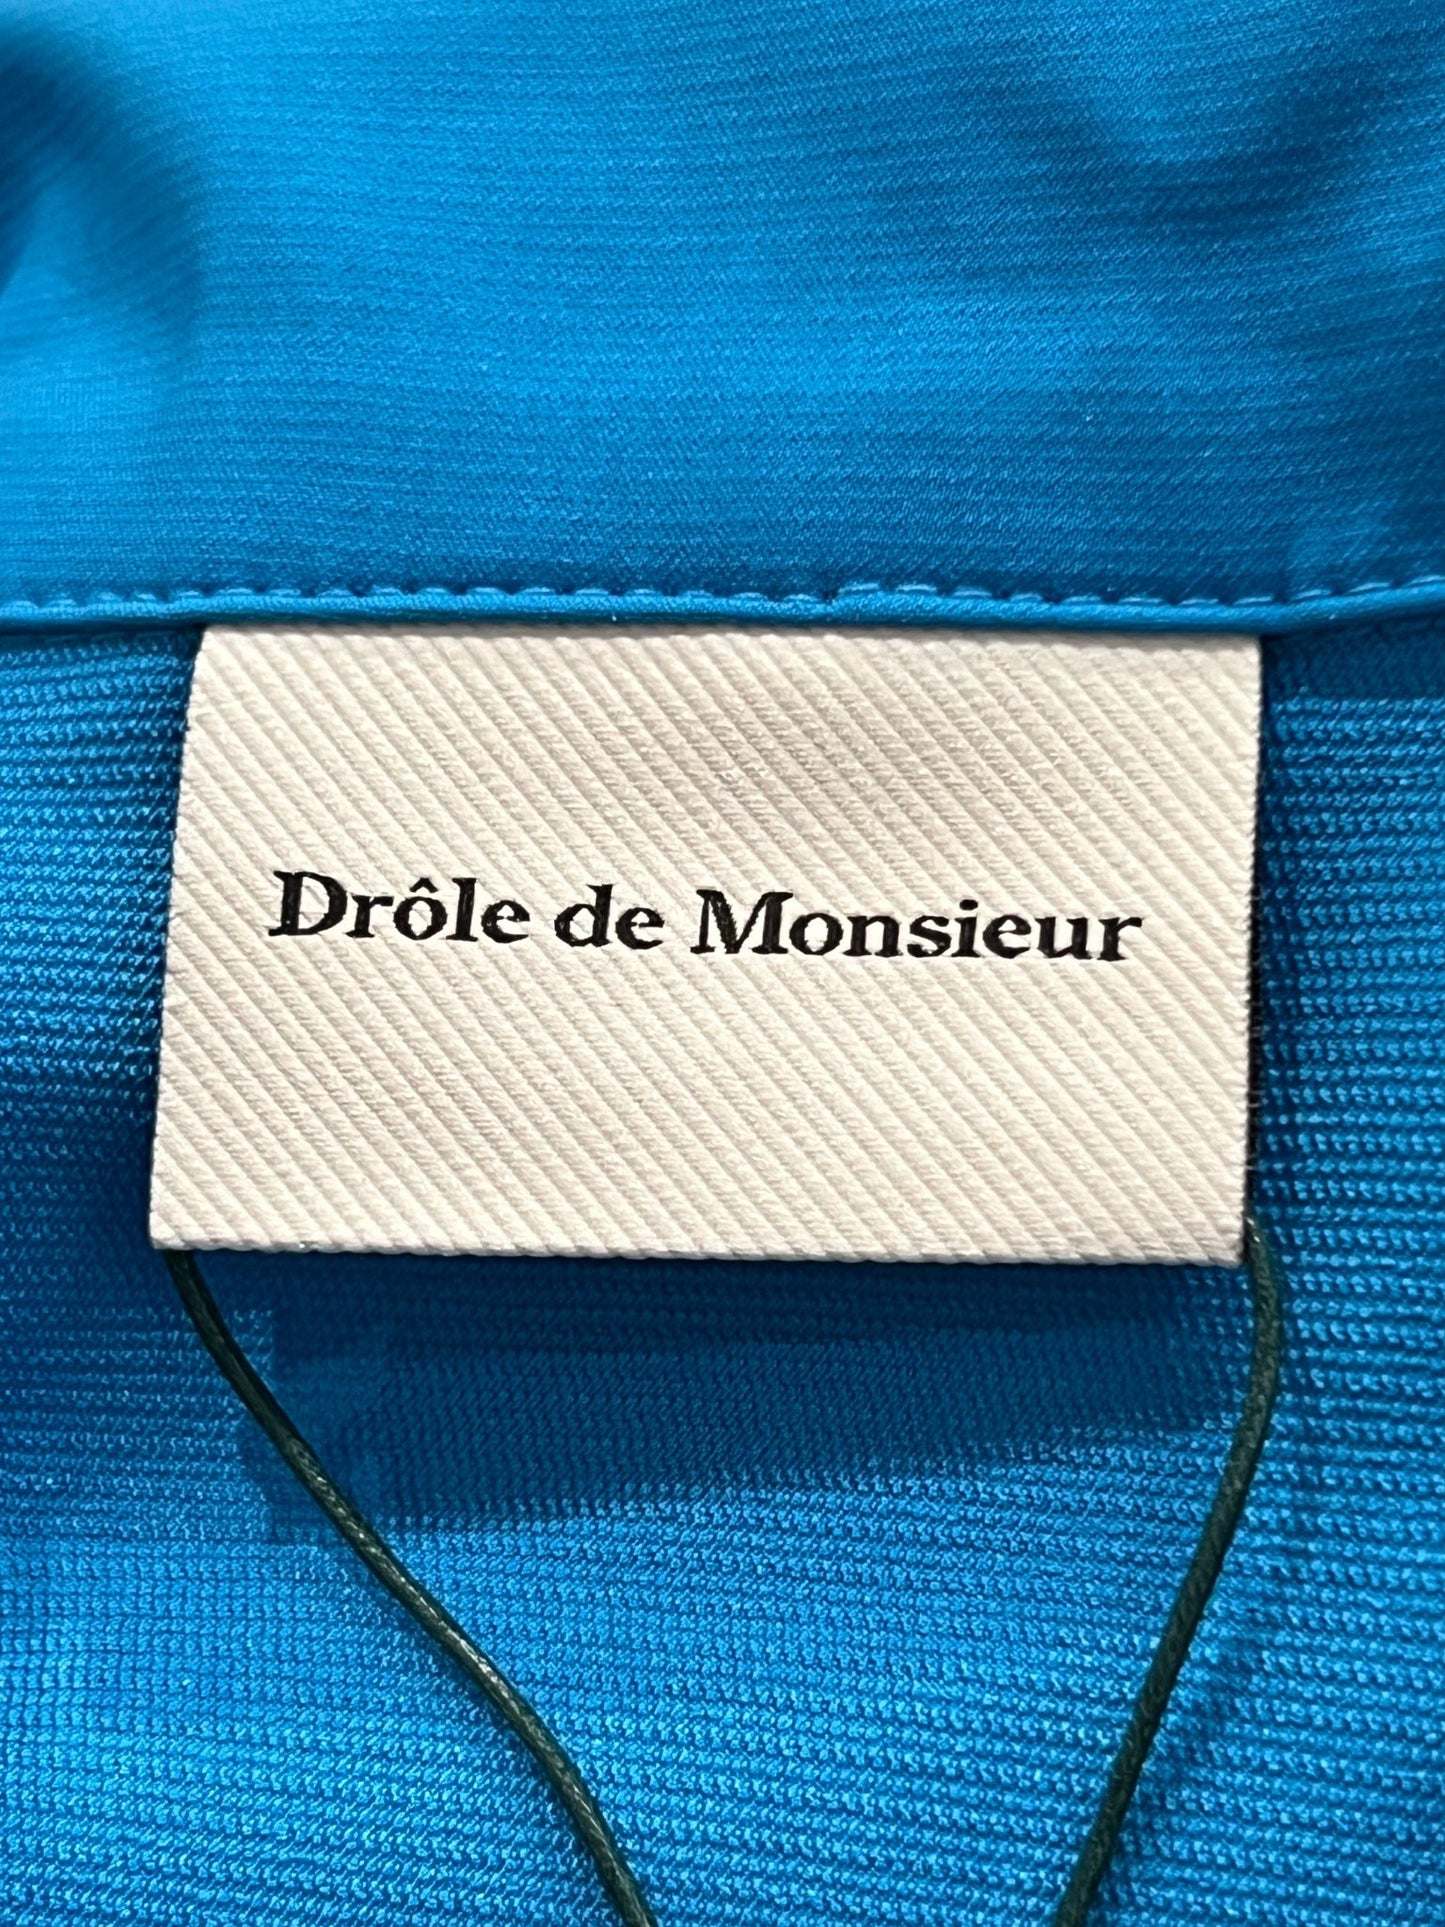 Clothing label reading "DROLE DE MONSIEUR SHIRT D-JT174-PL007-BE LA VESTE SLOGAN" on a technical fabric background.